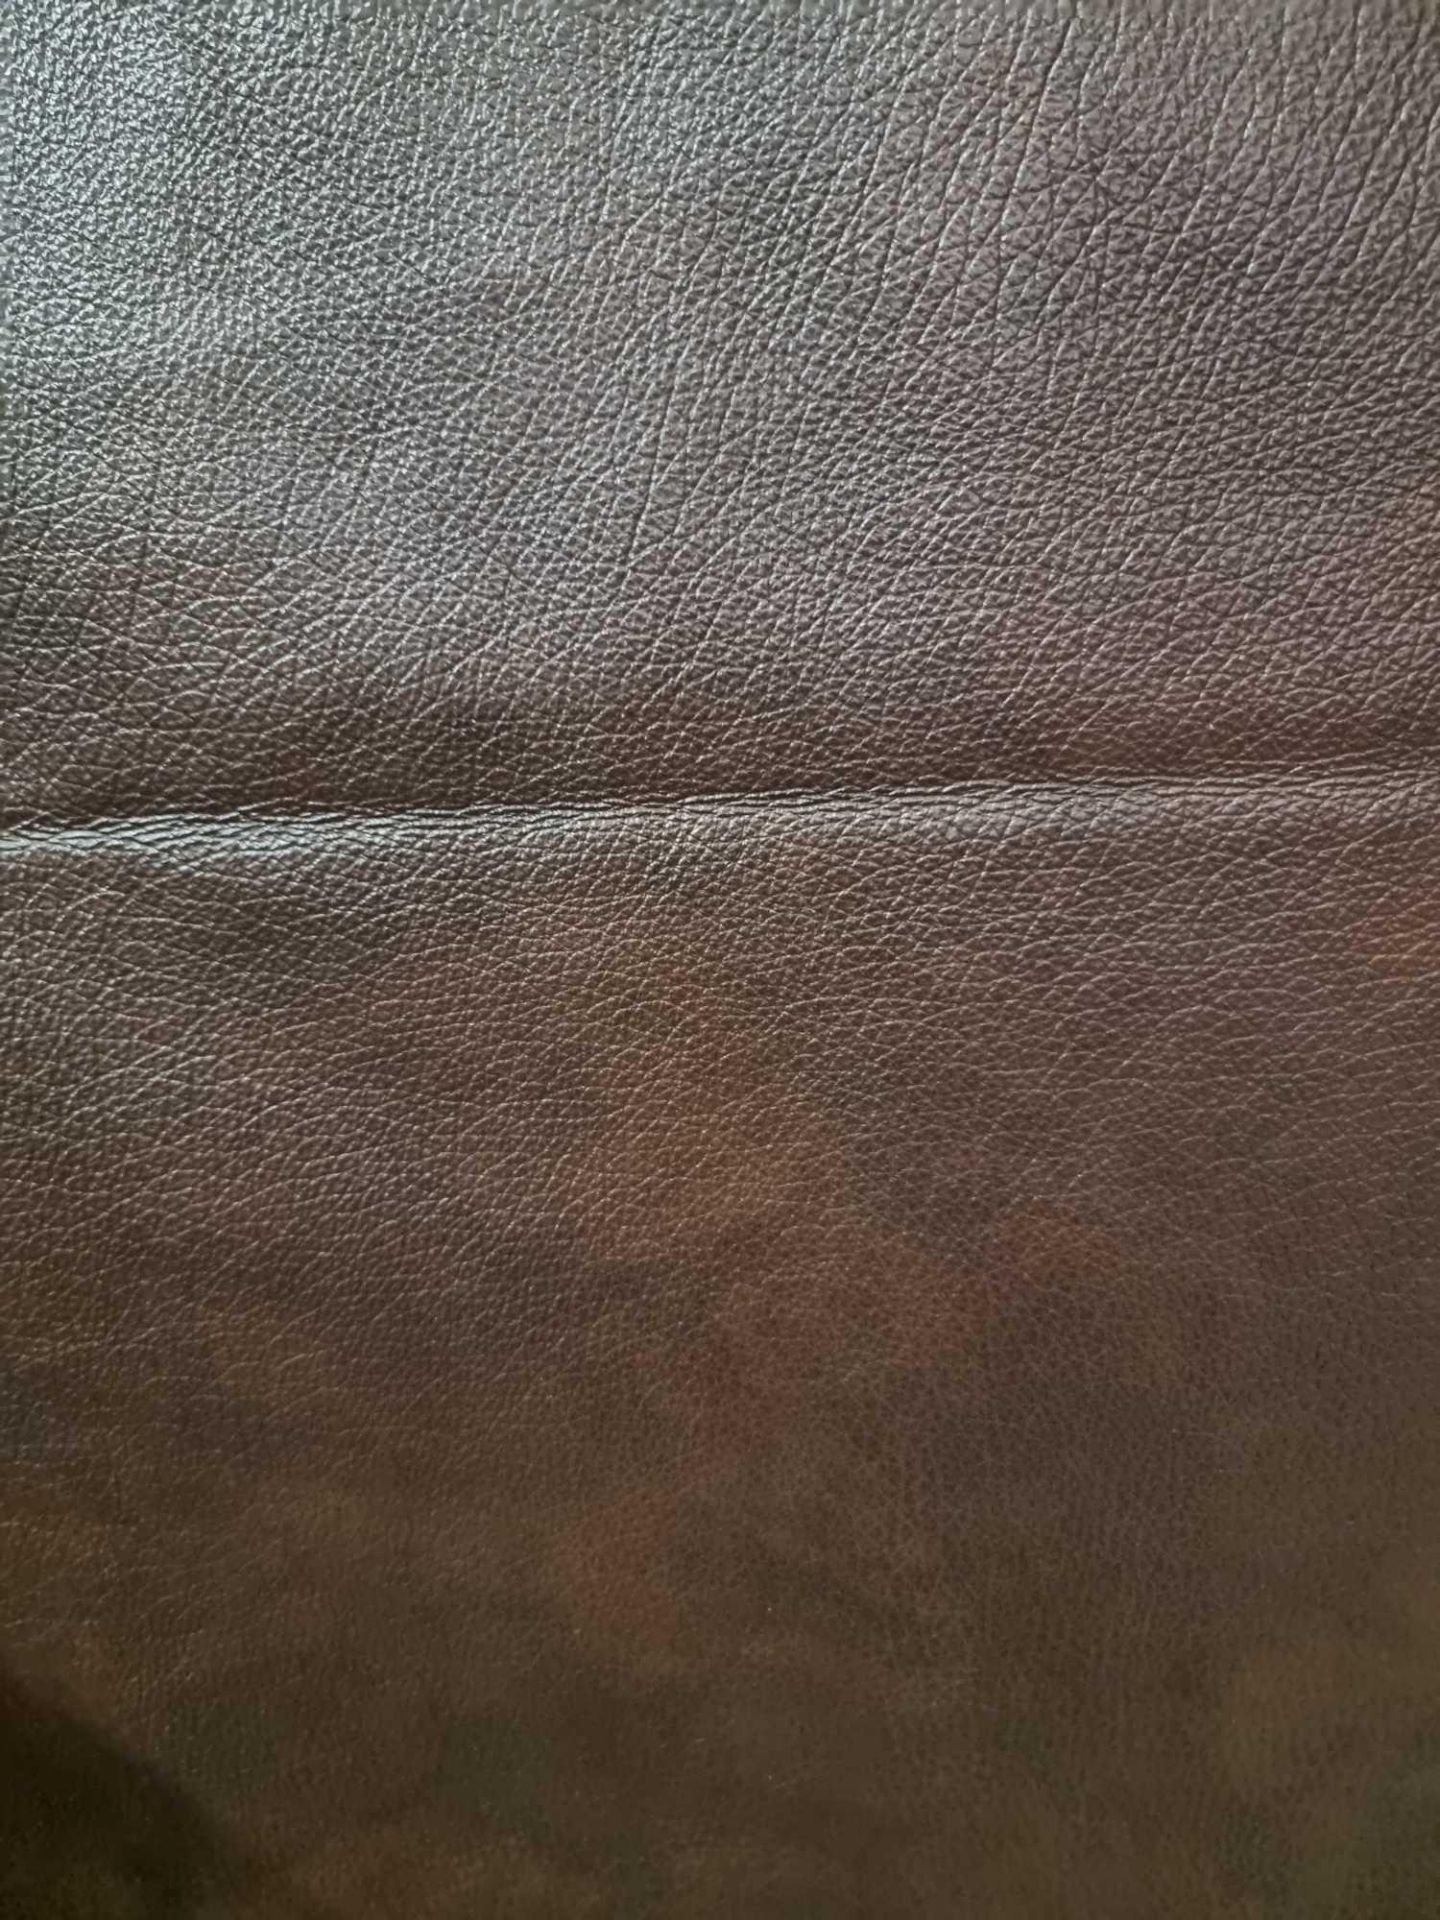 Trim International Memphis Brown Leather Hide approximately 4.62mÂ² 2.2 x 2.1cm - Bild 2 aus 2